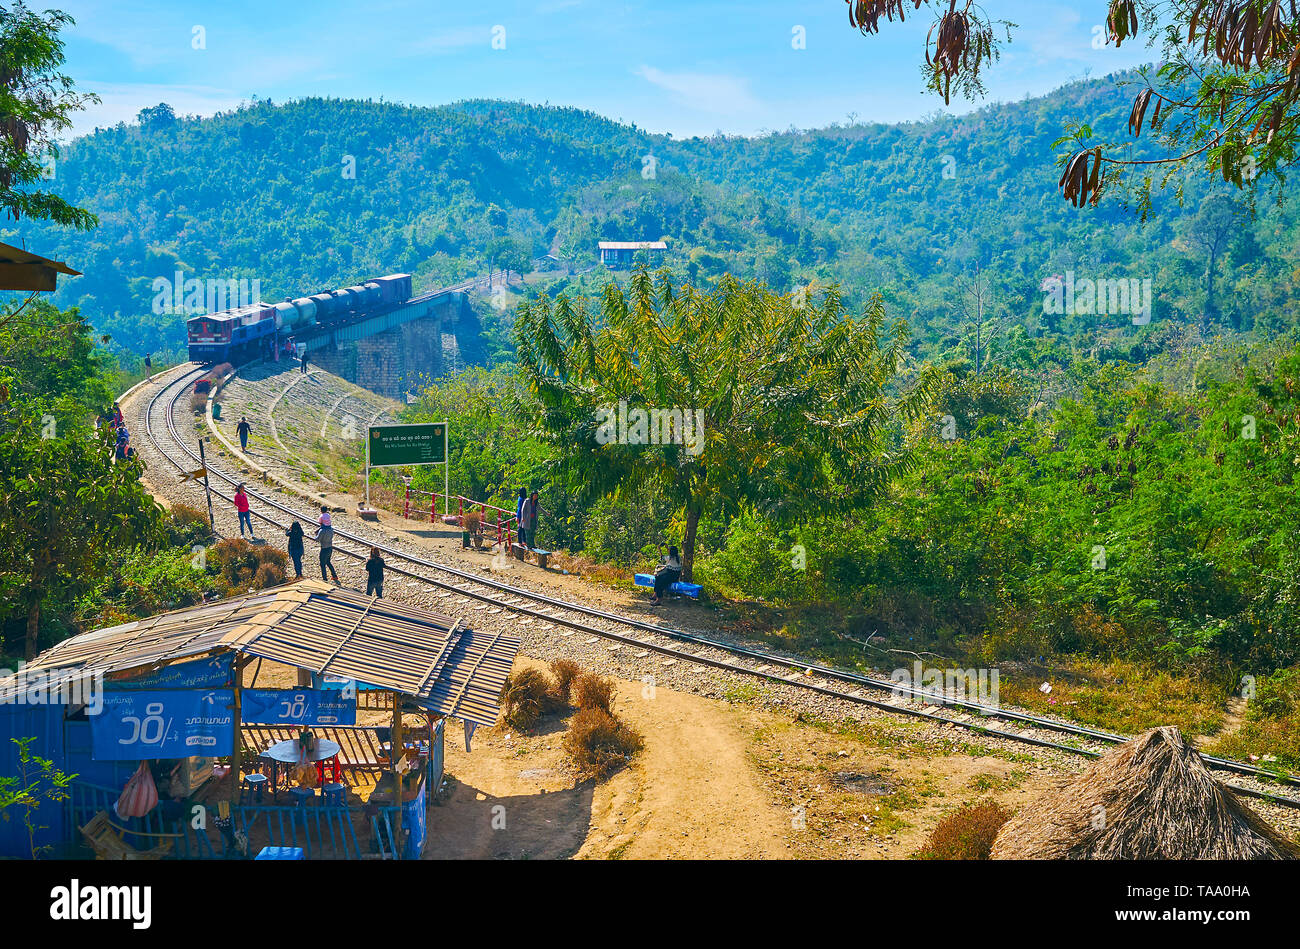 HEHO, MYANMAR - 19. FEBRUAR 2018: die Menschen sehen den alten Bahnhof, reiten die alte arch Bawa als Tha Yar Brücke in den Bergen der Shan Staat, am 19. Februar Stockfoto